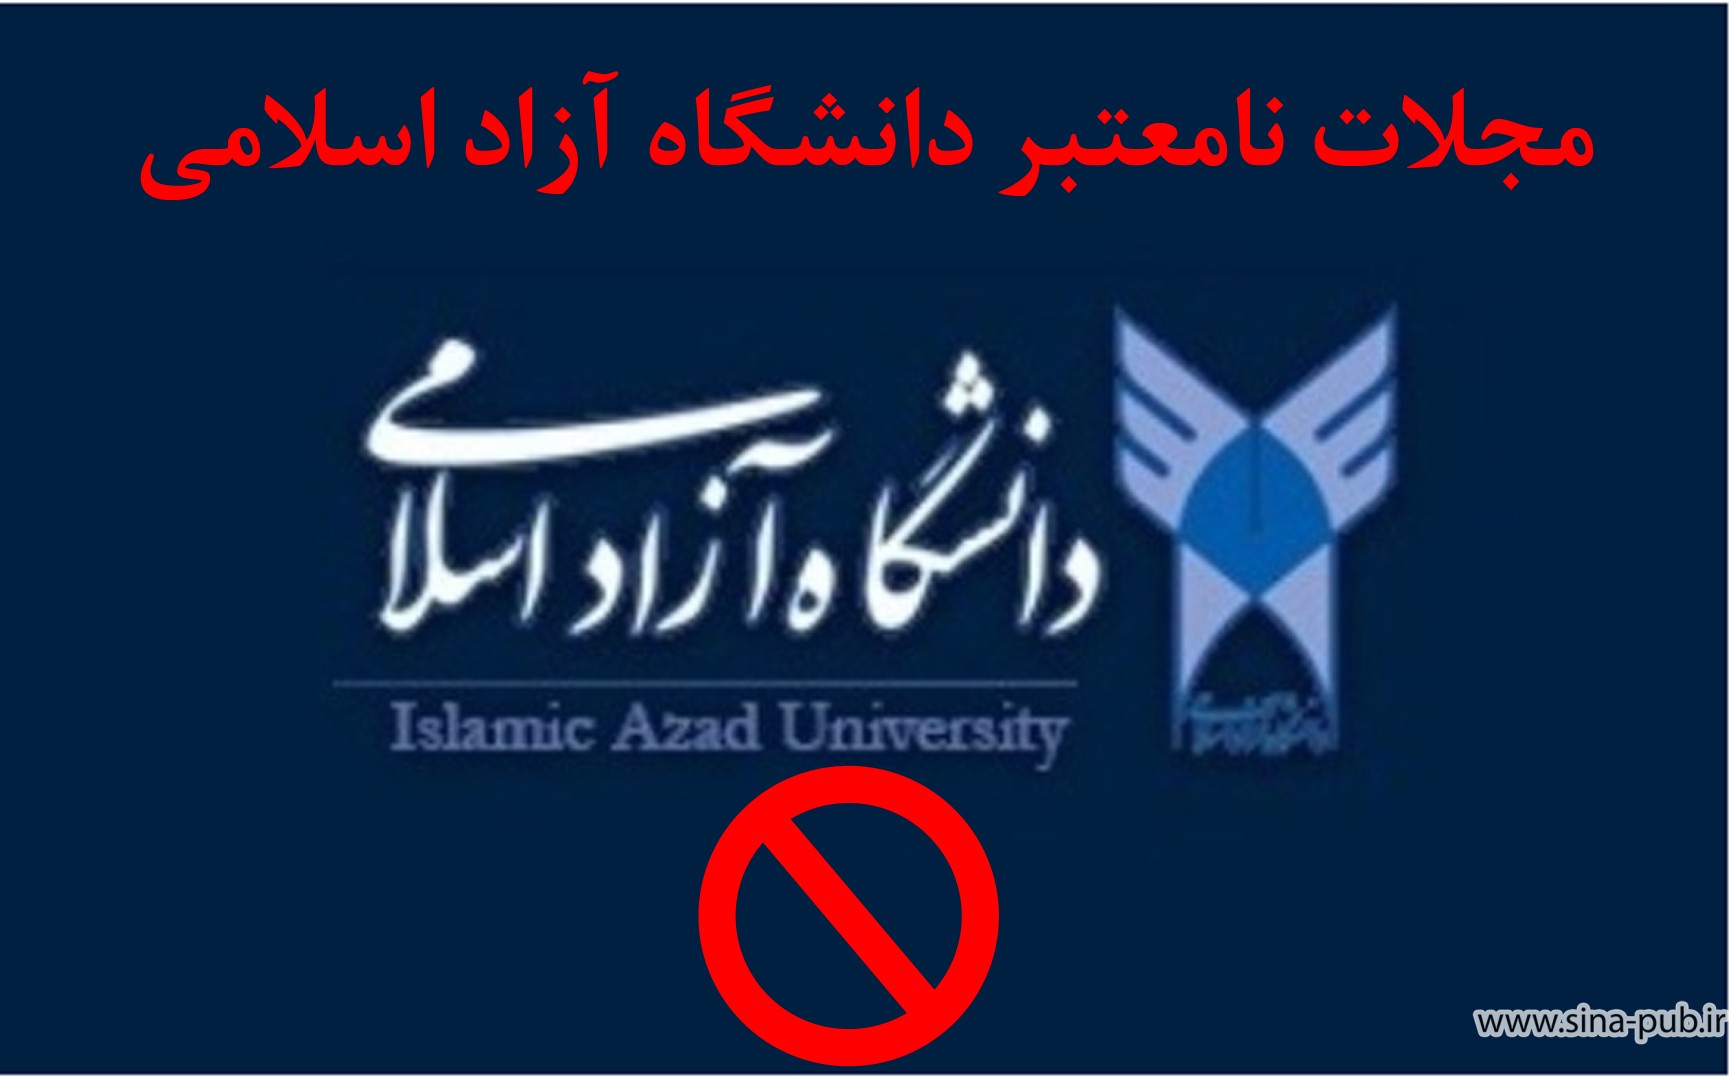 مجلات نامعتبر دانشگاه آزاد اسلامی